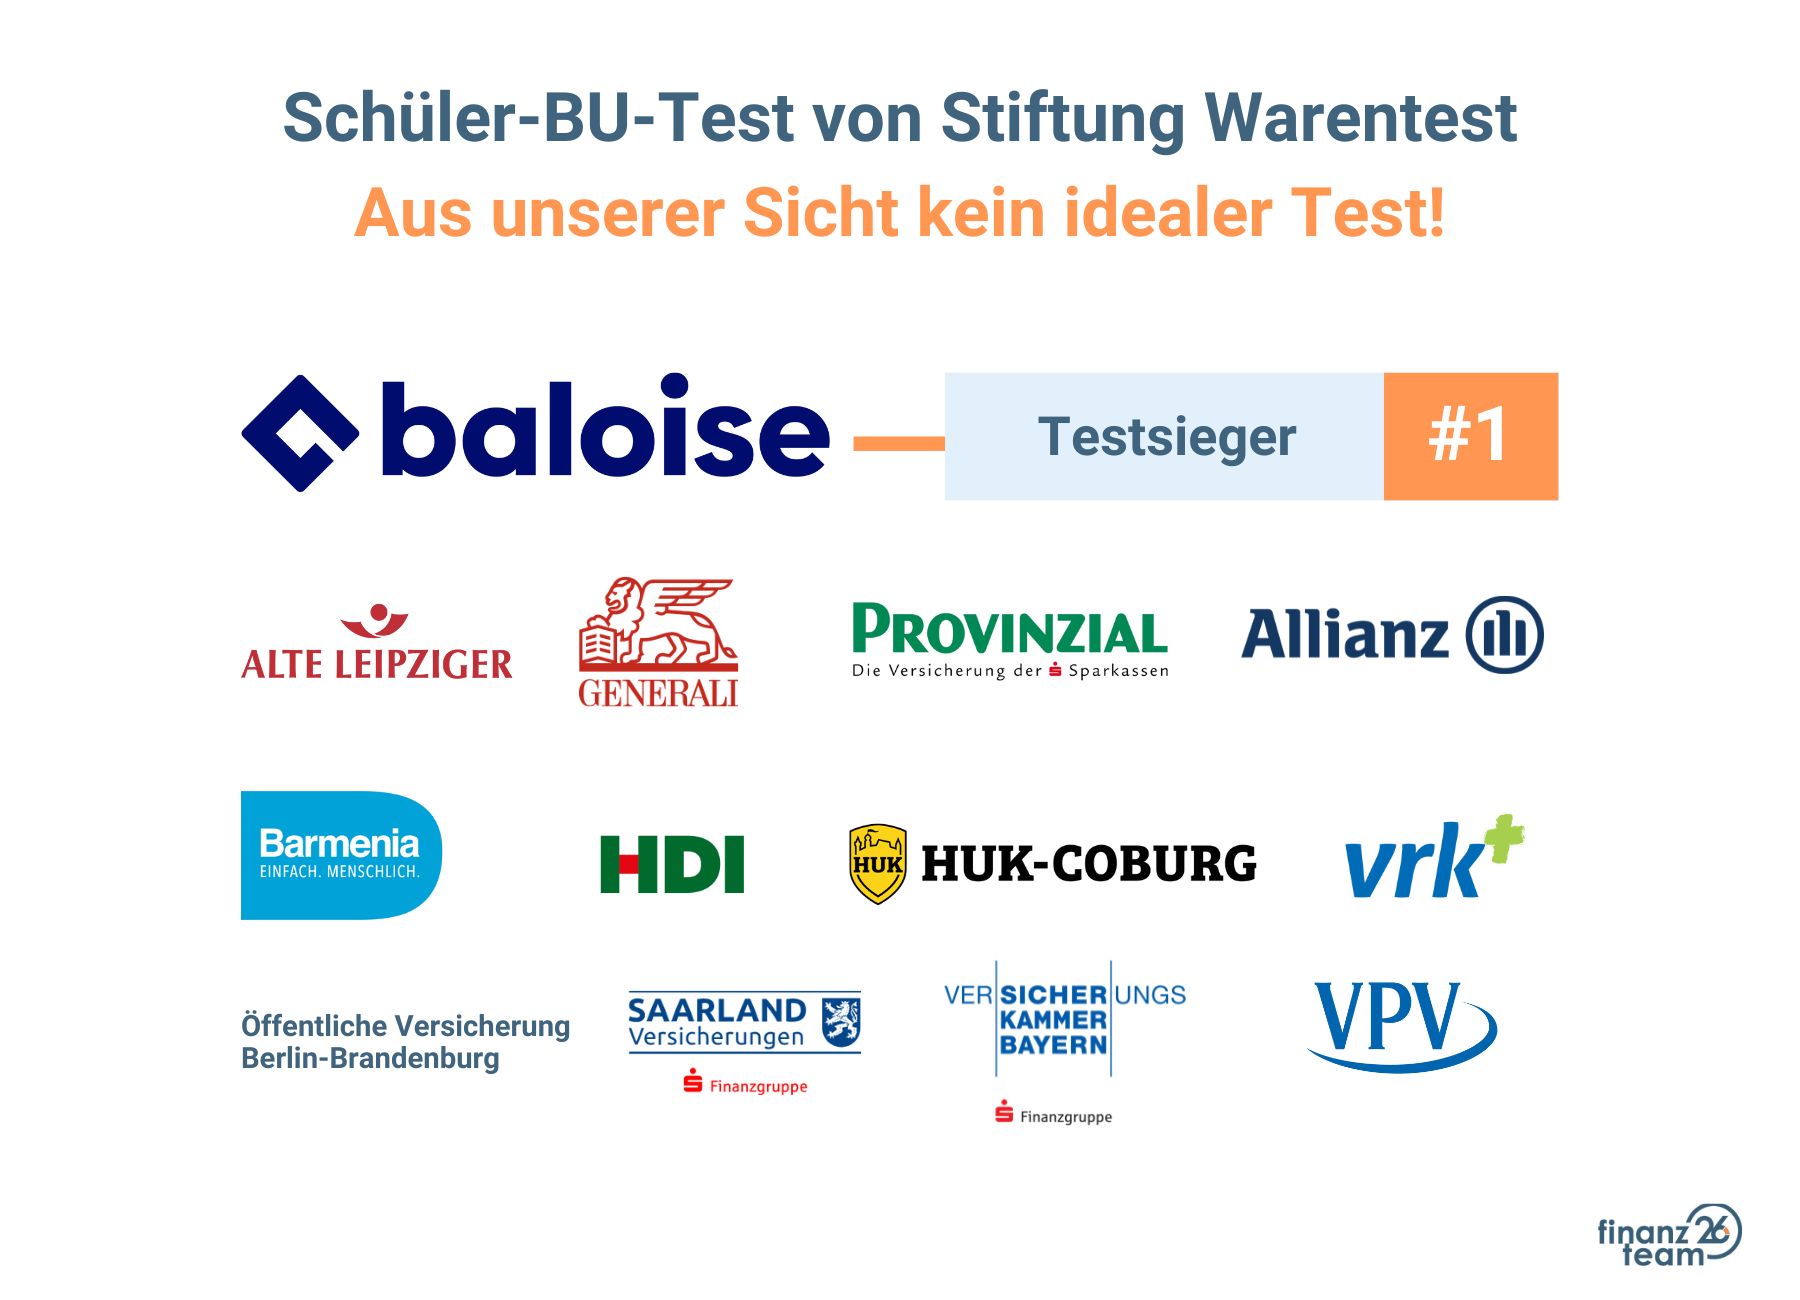 Schüler-BU-Test von Stiftung Warentest, Empfehlungen und Fazit.